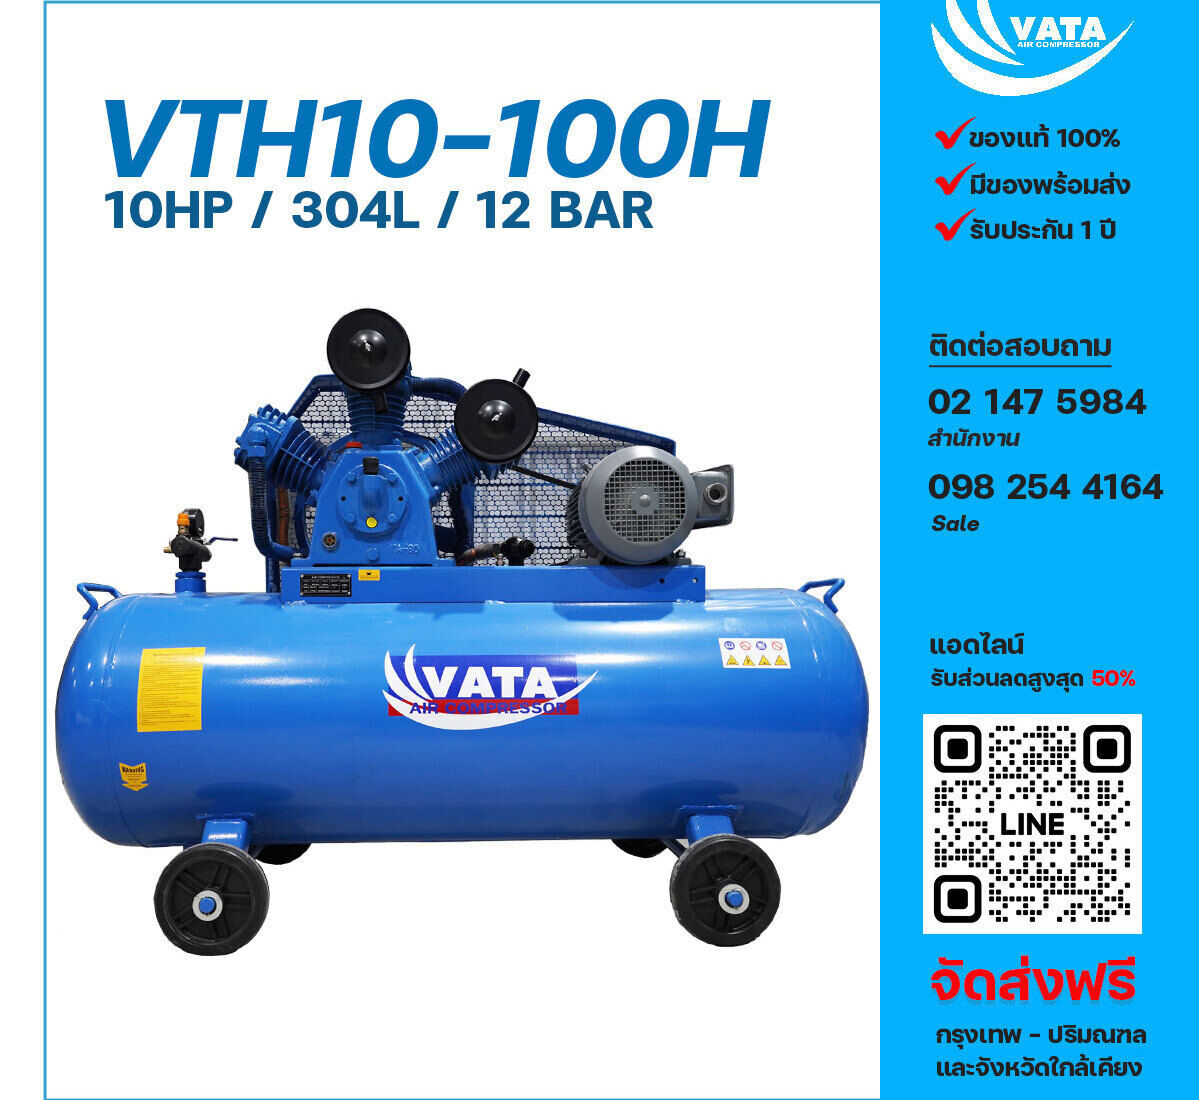 ปั๊มลมลูกสูบ VATA Two Stage ขนาด 10 แรงม้า รุ่น VTH10-100H ไฟฟ้า 380V มอเตอร์ 10 แรงม้า ไฟฟ้า 380 โวลต์ ถังเก็บลมขนาด 304 ลิตร  รับประกัน 1 ปี ตามเงื่อนไขบริษัทผู้ผลิต